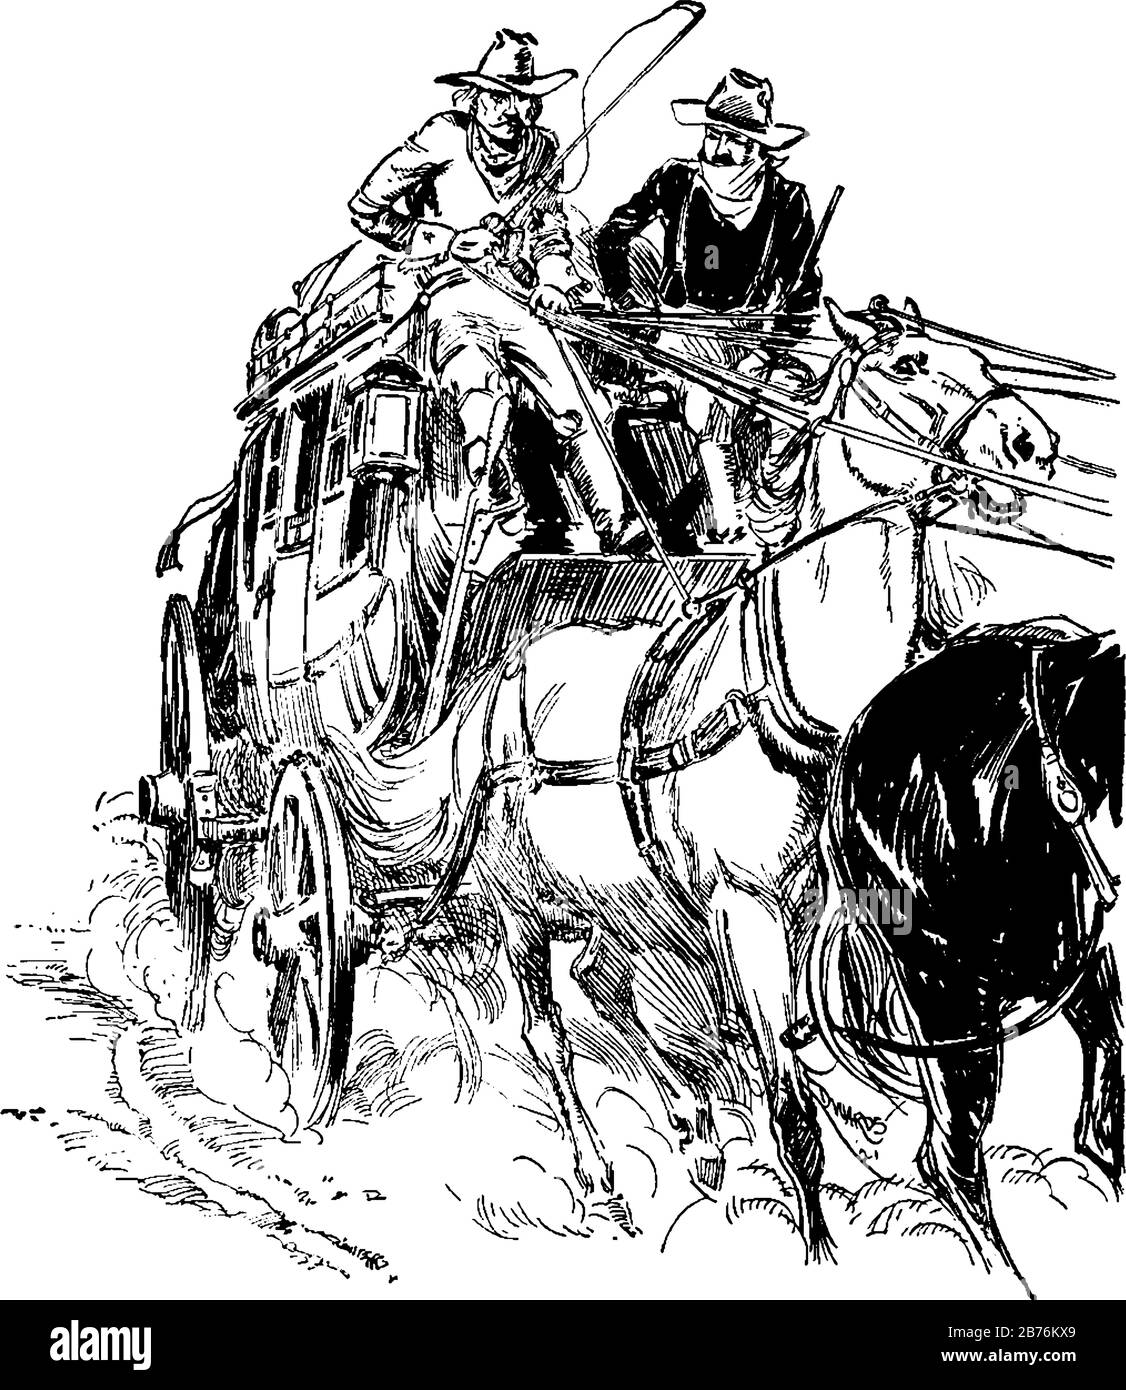 Deux personnes dans un chariot tiré par des chevaux, dessin de ligne vintage ou illustration de gravure Illustration de Vecteur